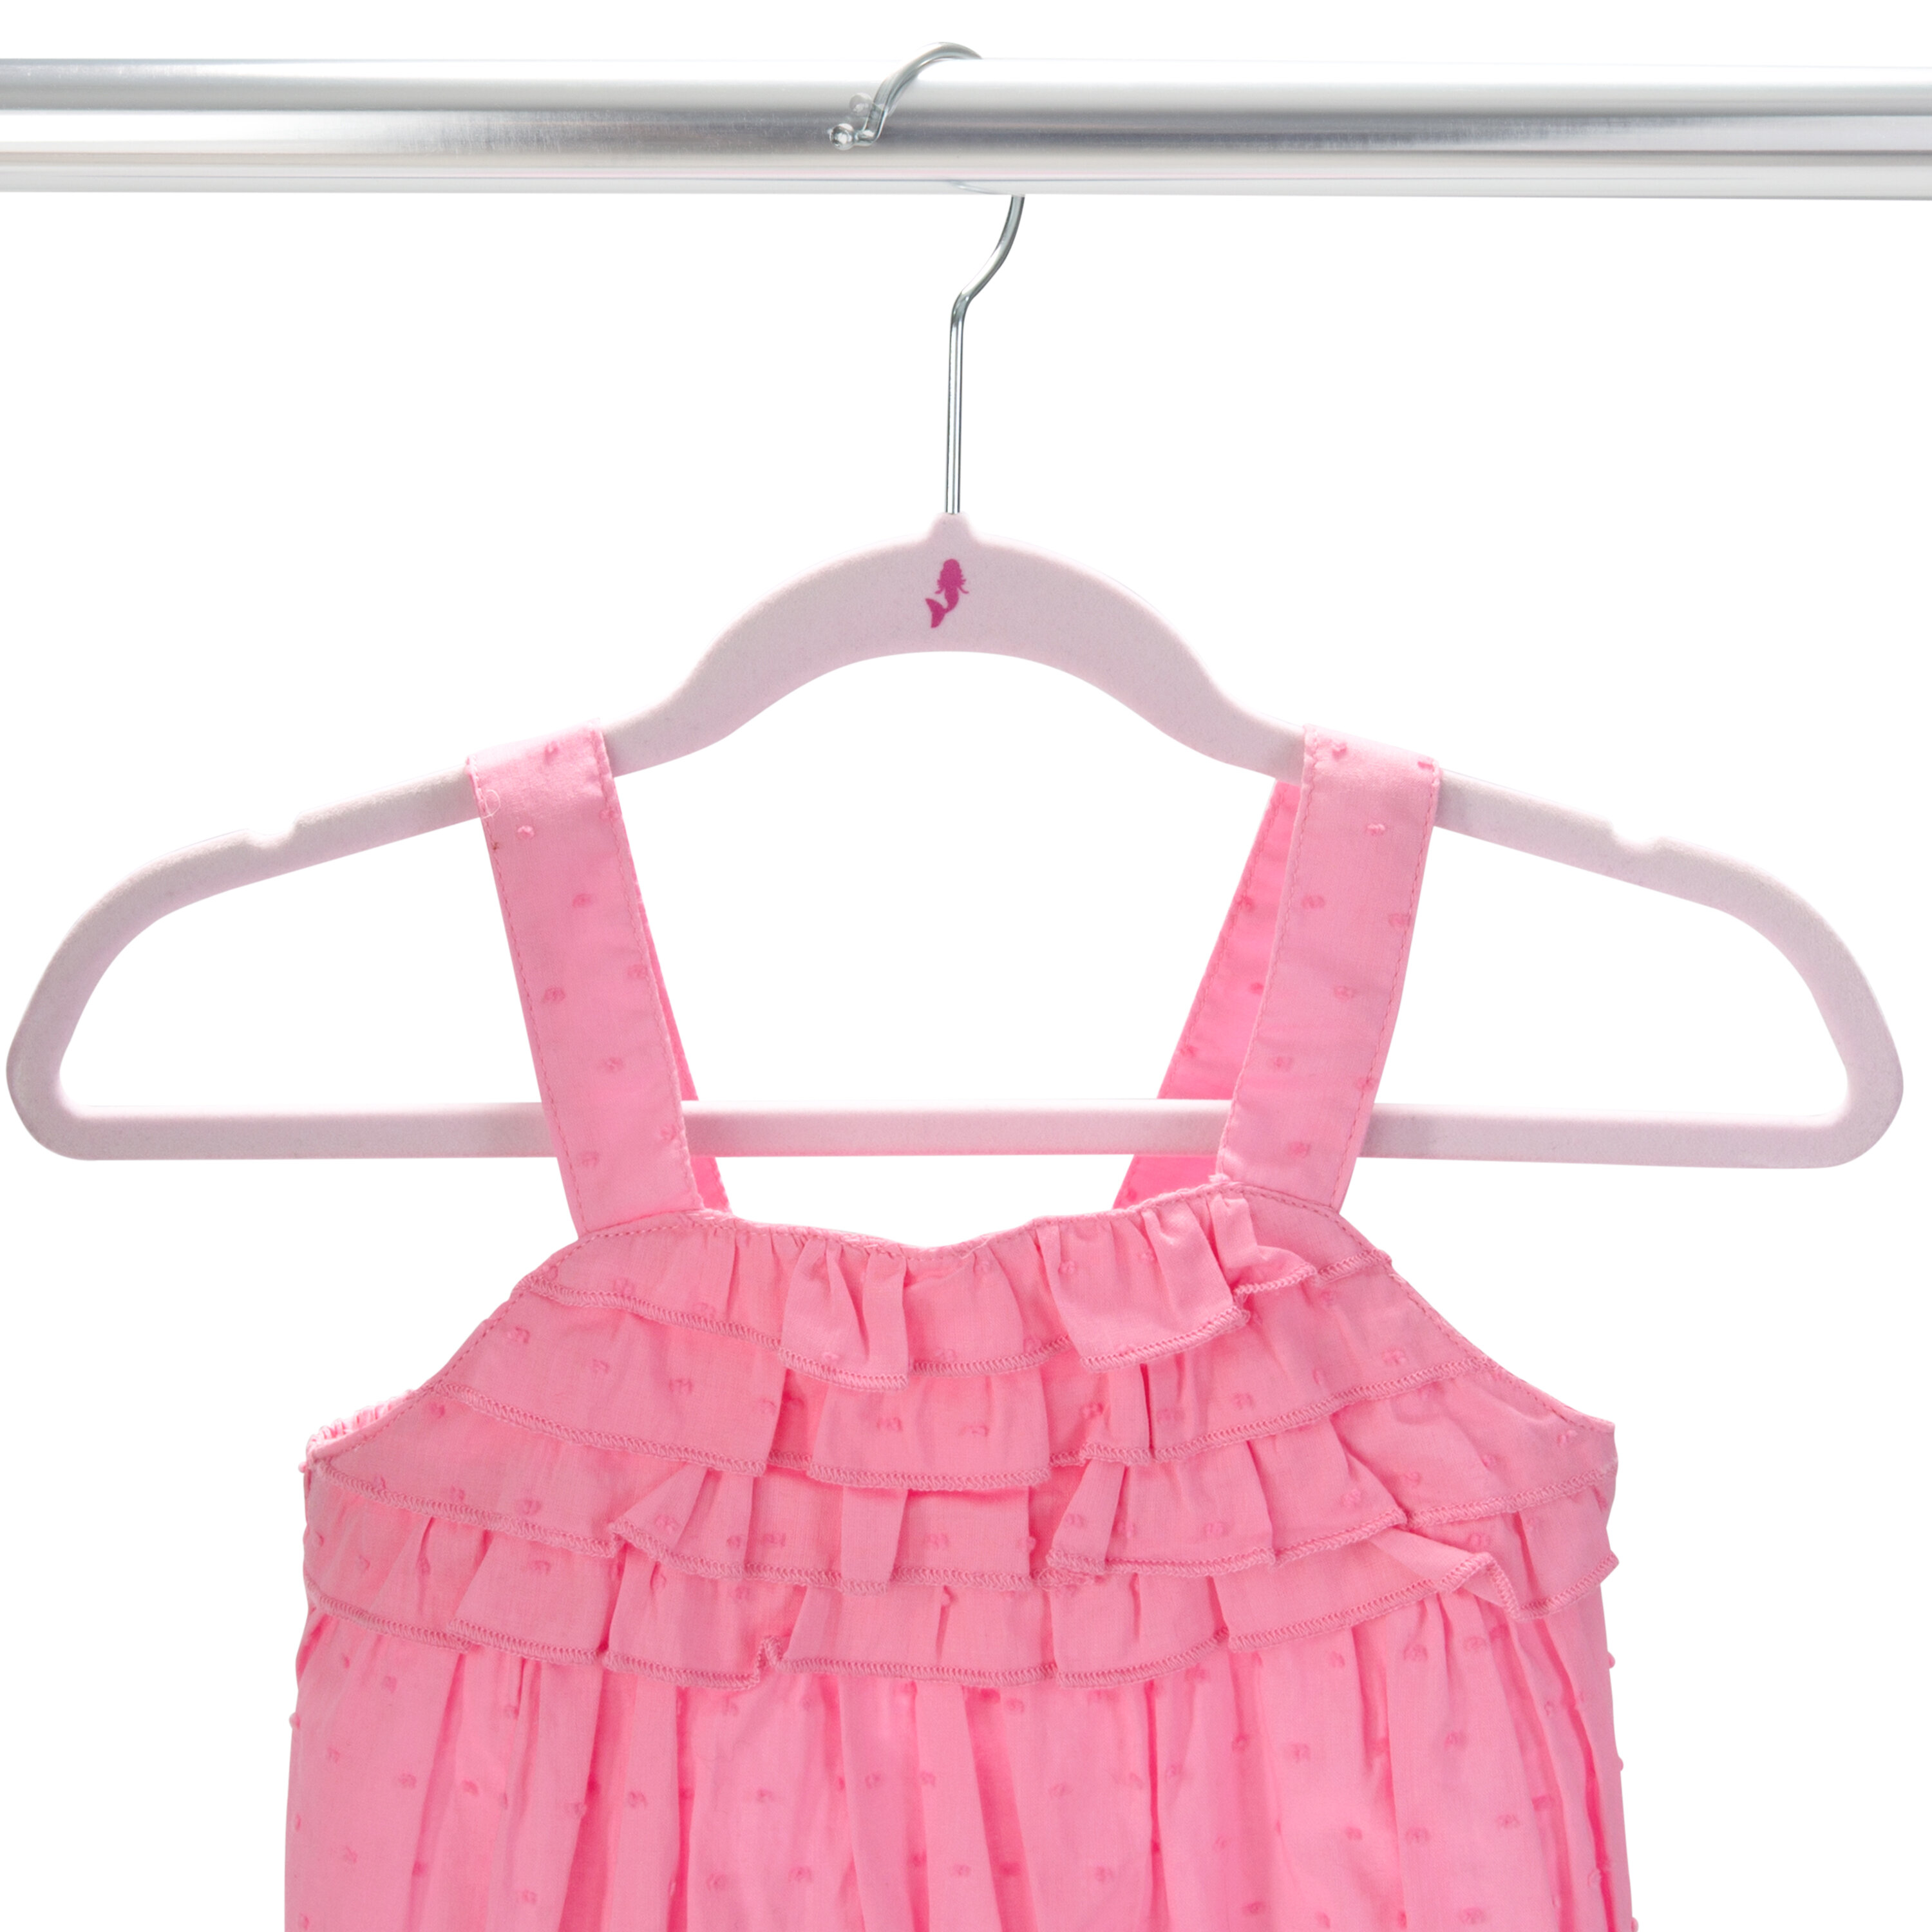 https://assets.wfcdn.com/im/56207396/compr-r85/8480/84801007/timothy-plastic-non-slip-kids-hanger-for-dressshirtsweater.jpg